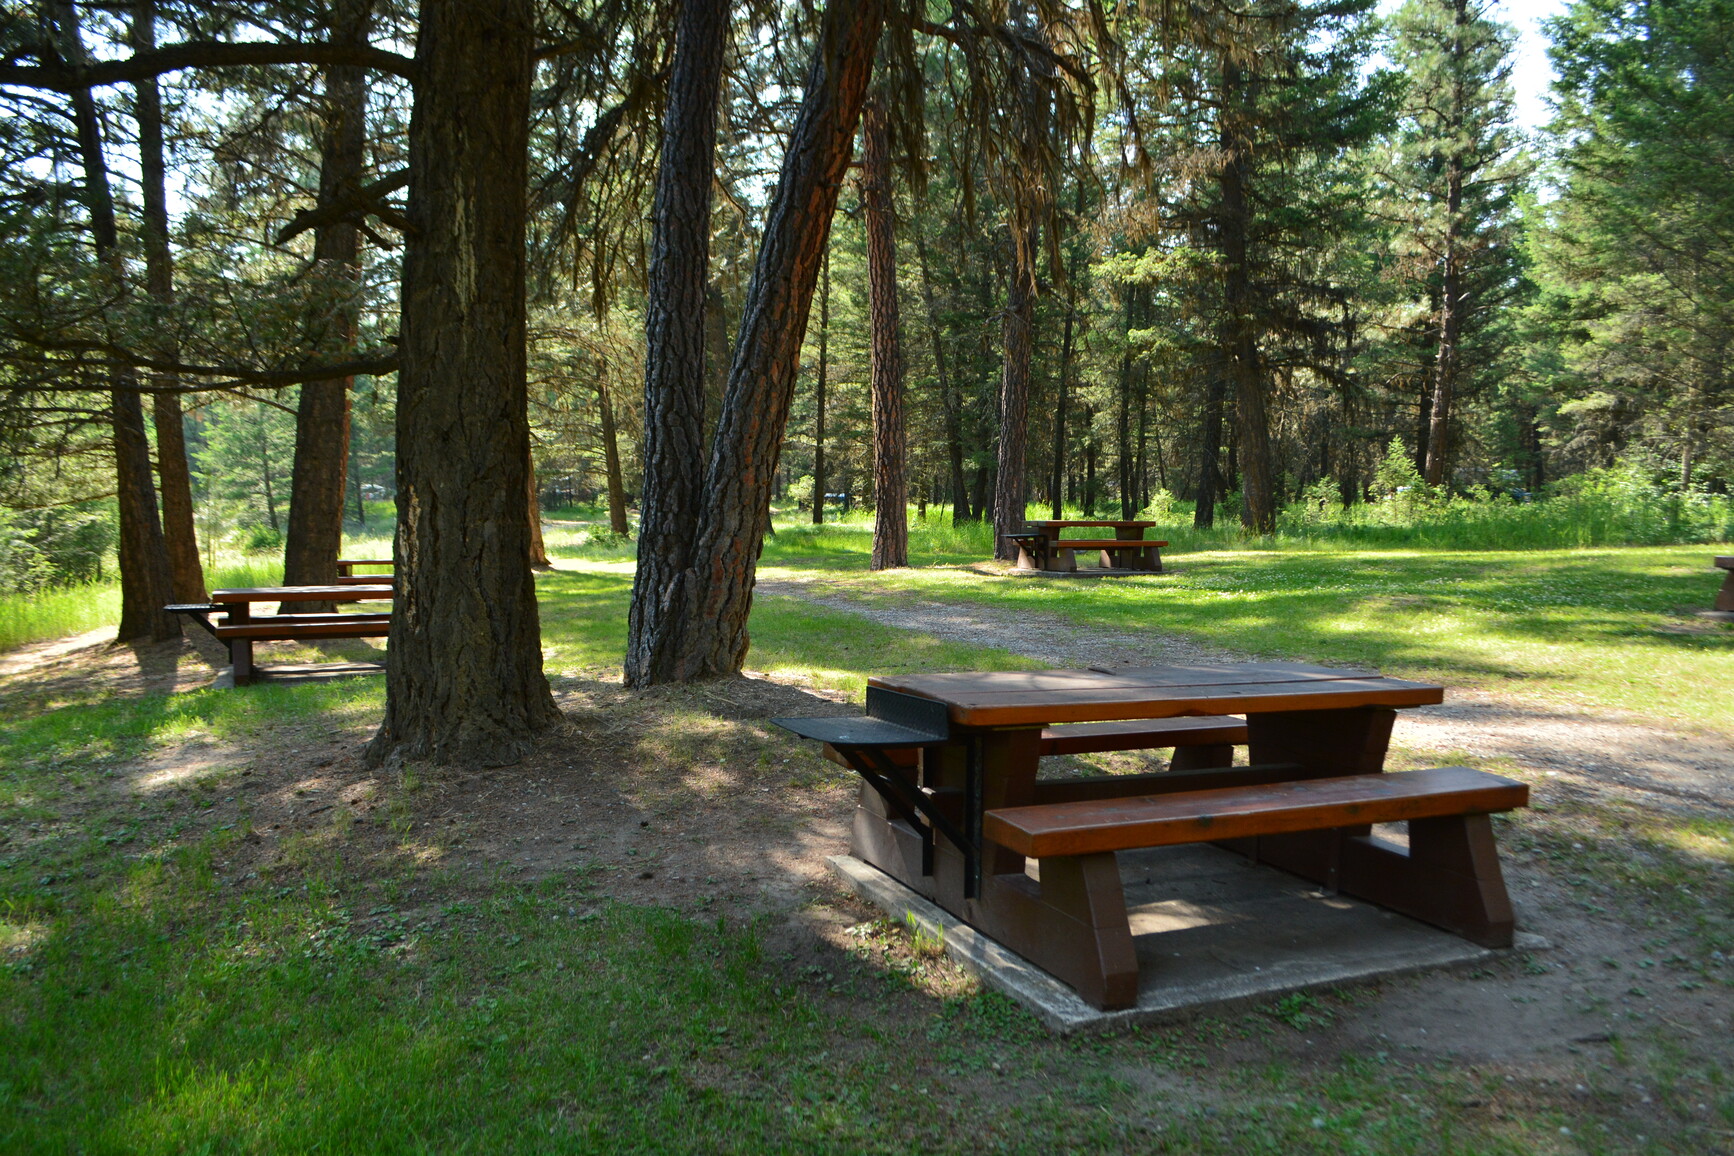 Picnic area in park.